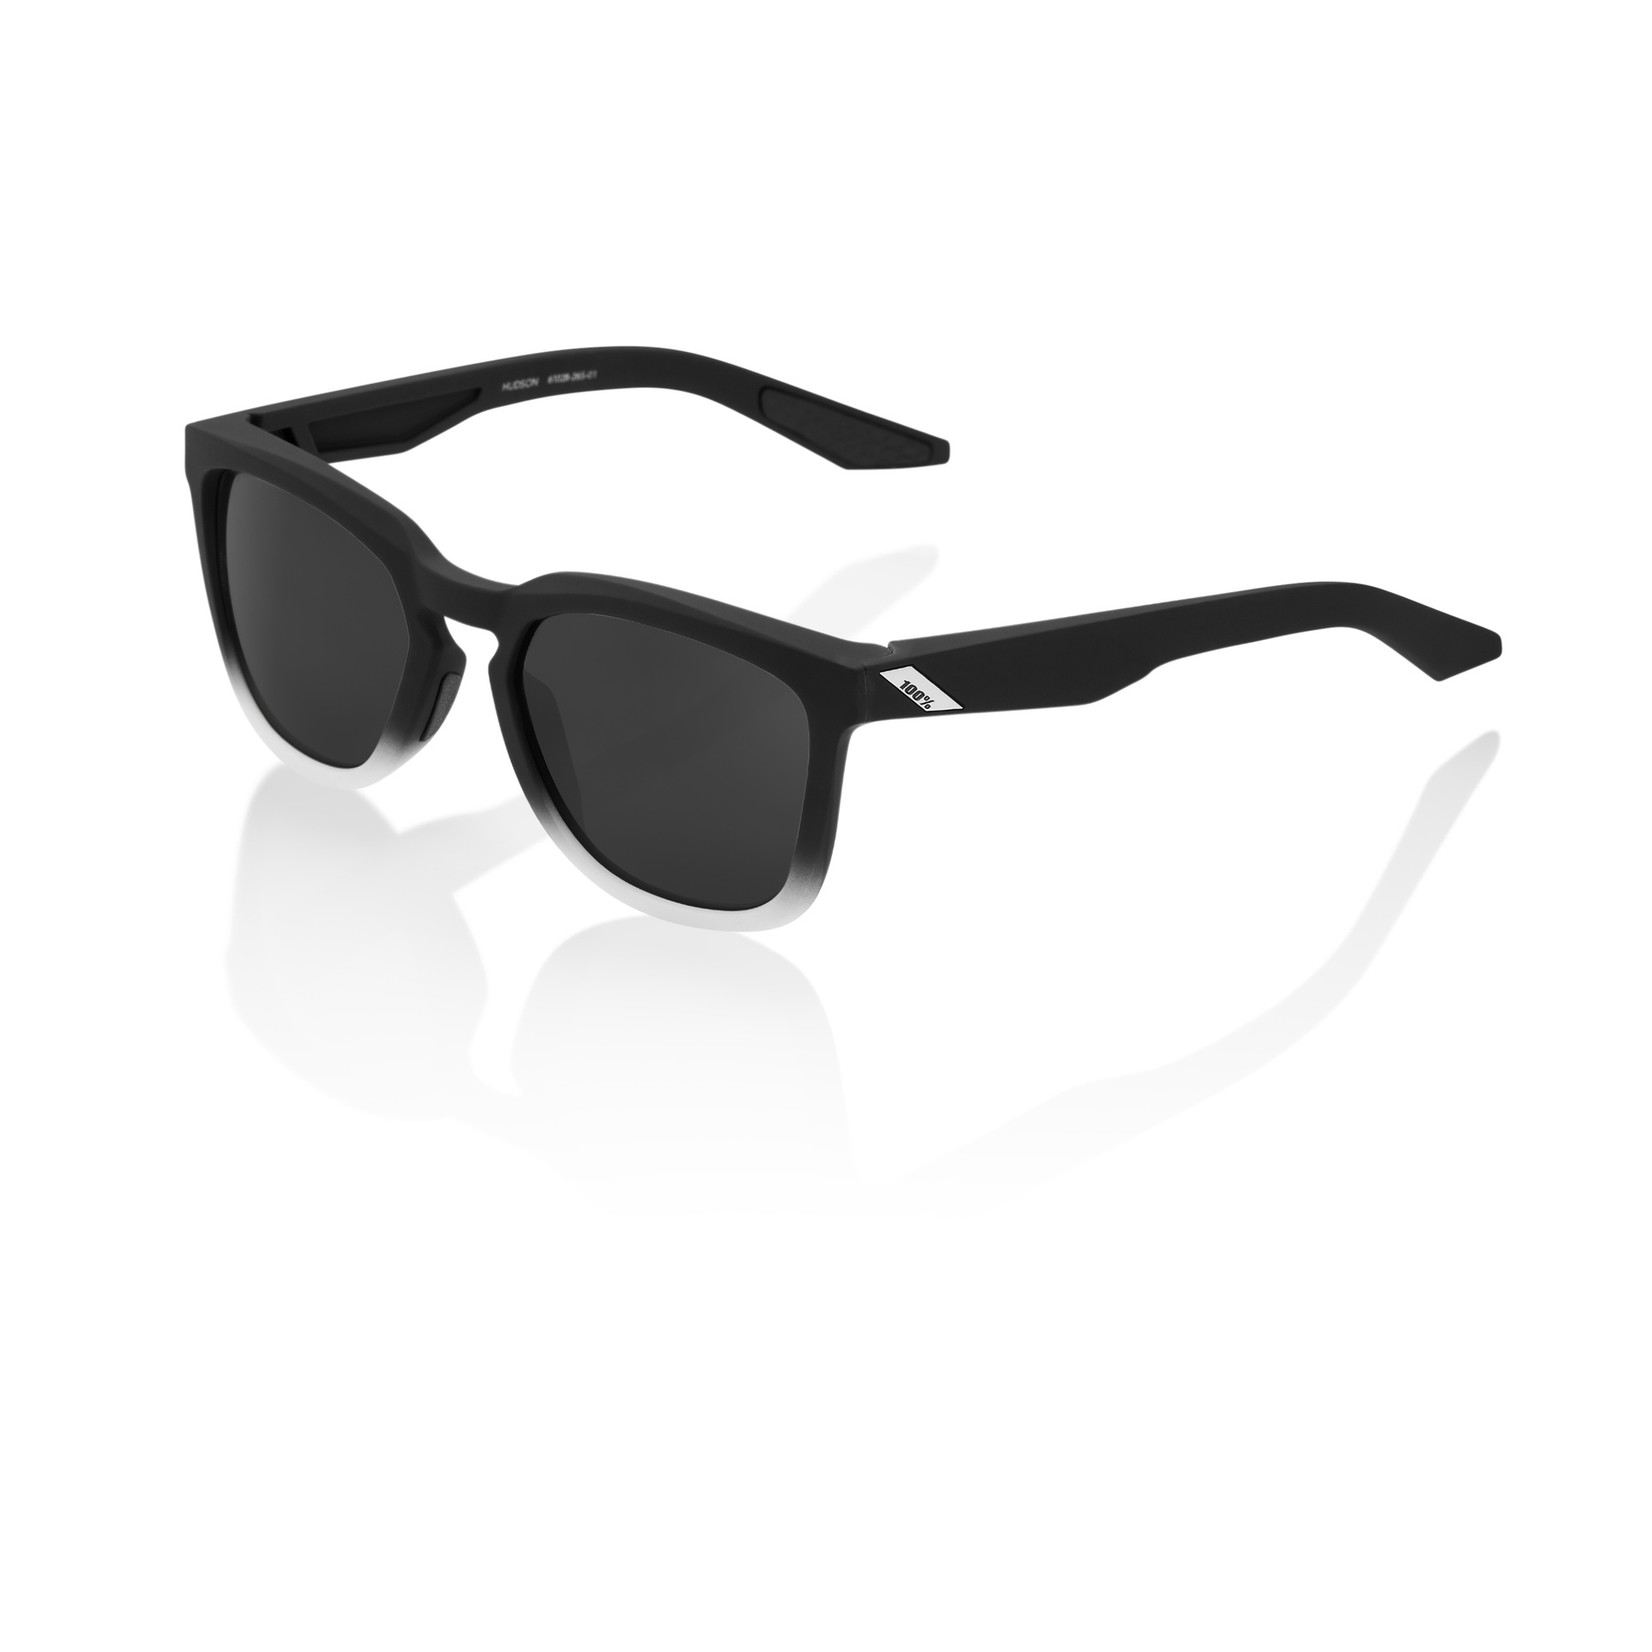 100 Percent 100% Hudson Bike Sunglasses Soft Tact Black/White - Black Mirror